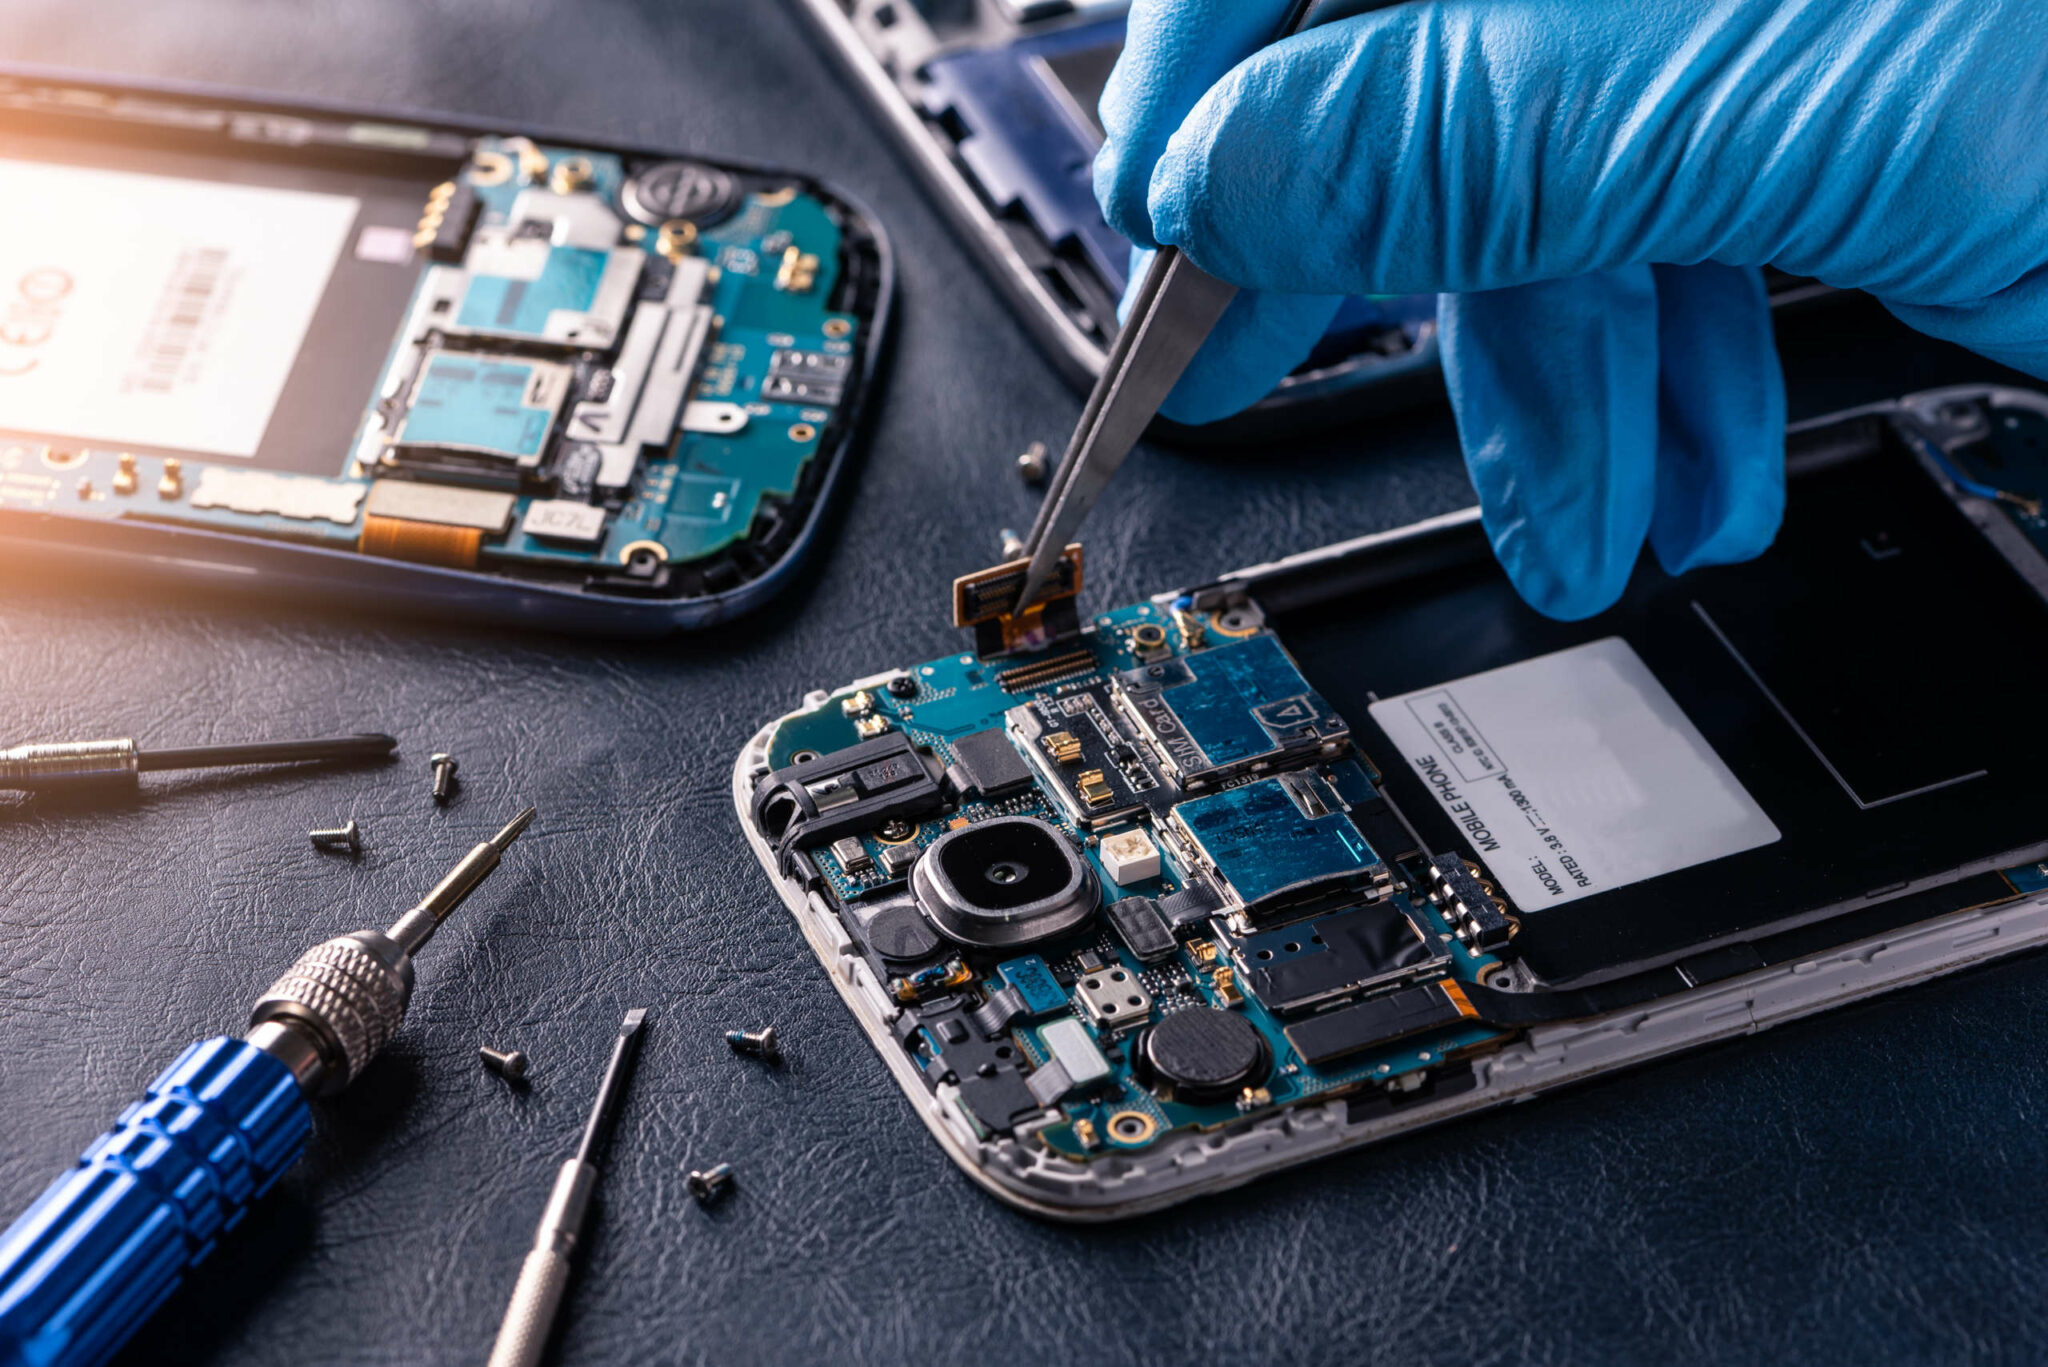 Blois Repair Réparation Smartphone Tablettes Ordinateur Téléphone Blois